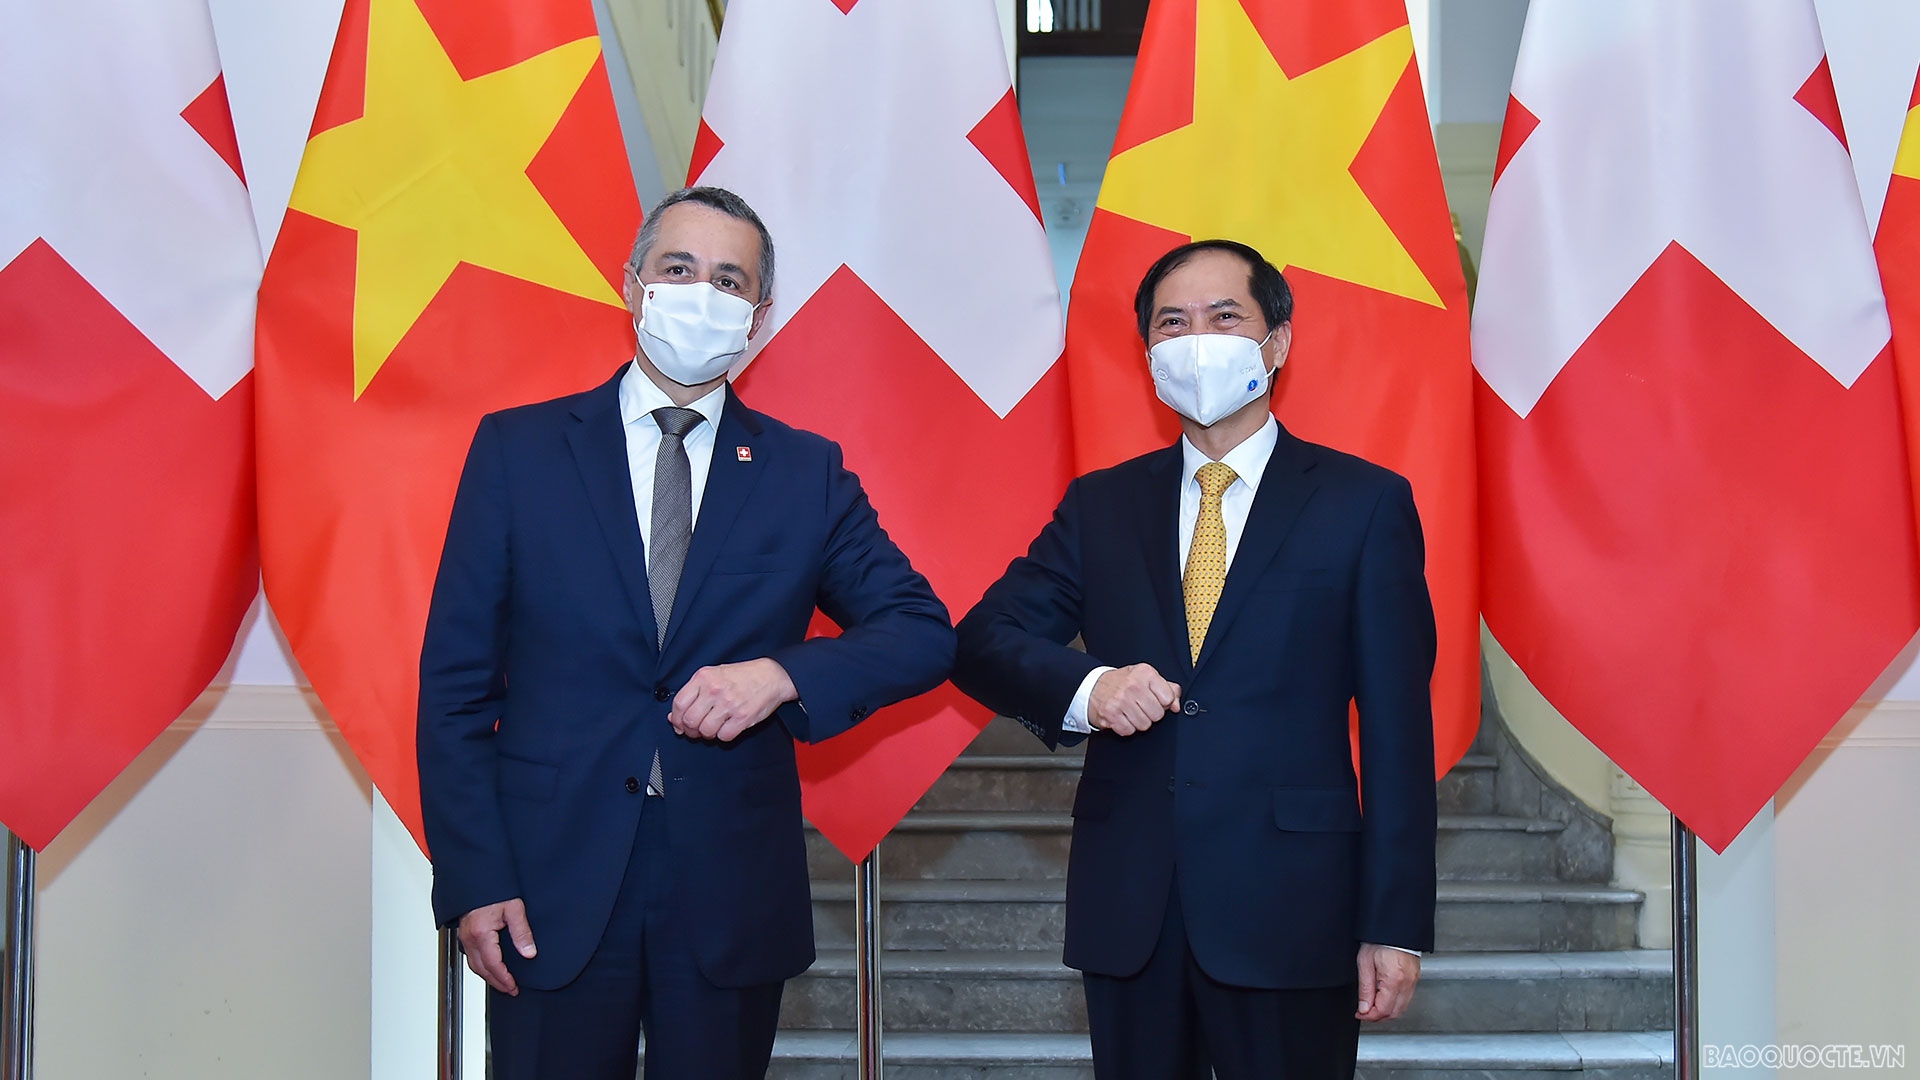 Đề nghị Thụy Sỹ tiếp tục hỗ trợ Việt Nam tiếp cận nguồn cung vaccine Covid-19, thuốc điều trị và các thiết bị y tế